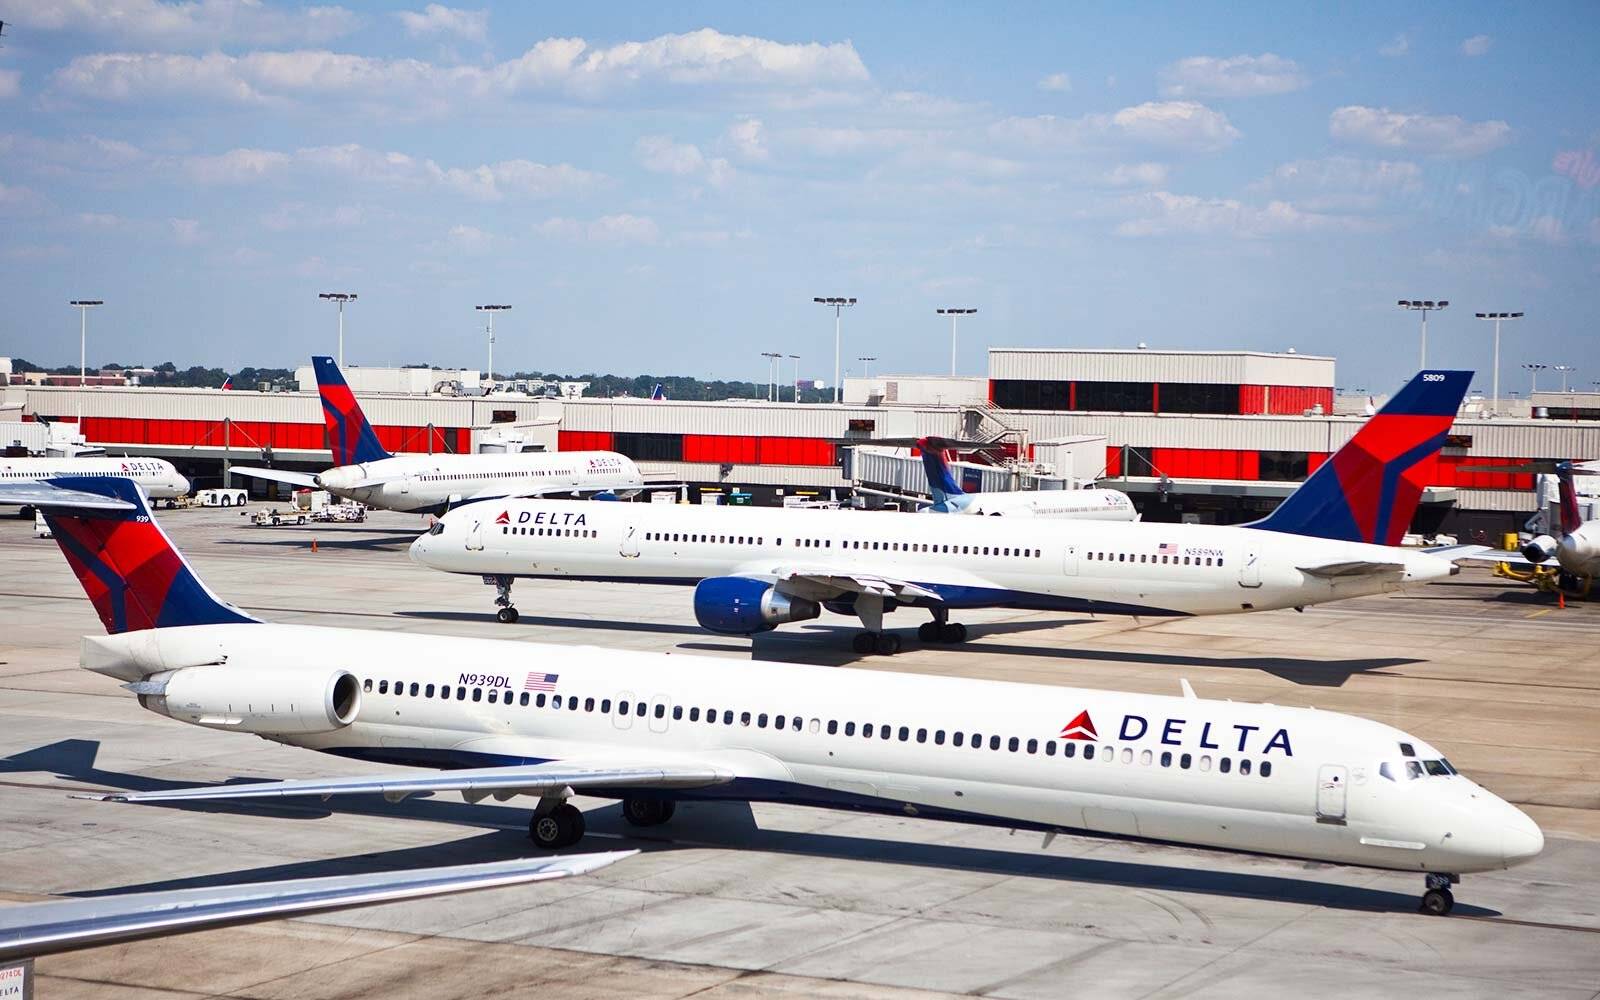 Delta airlines flight information, reservations, status